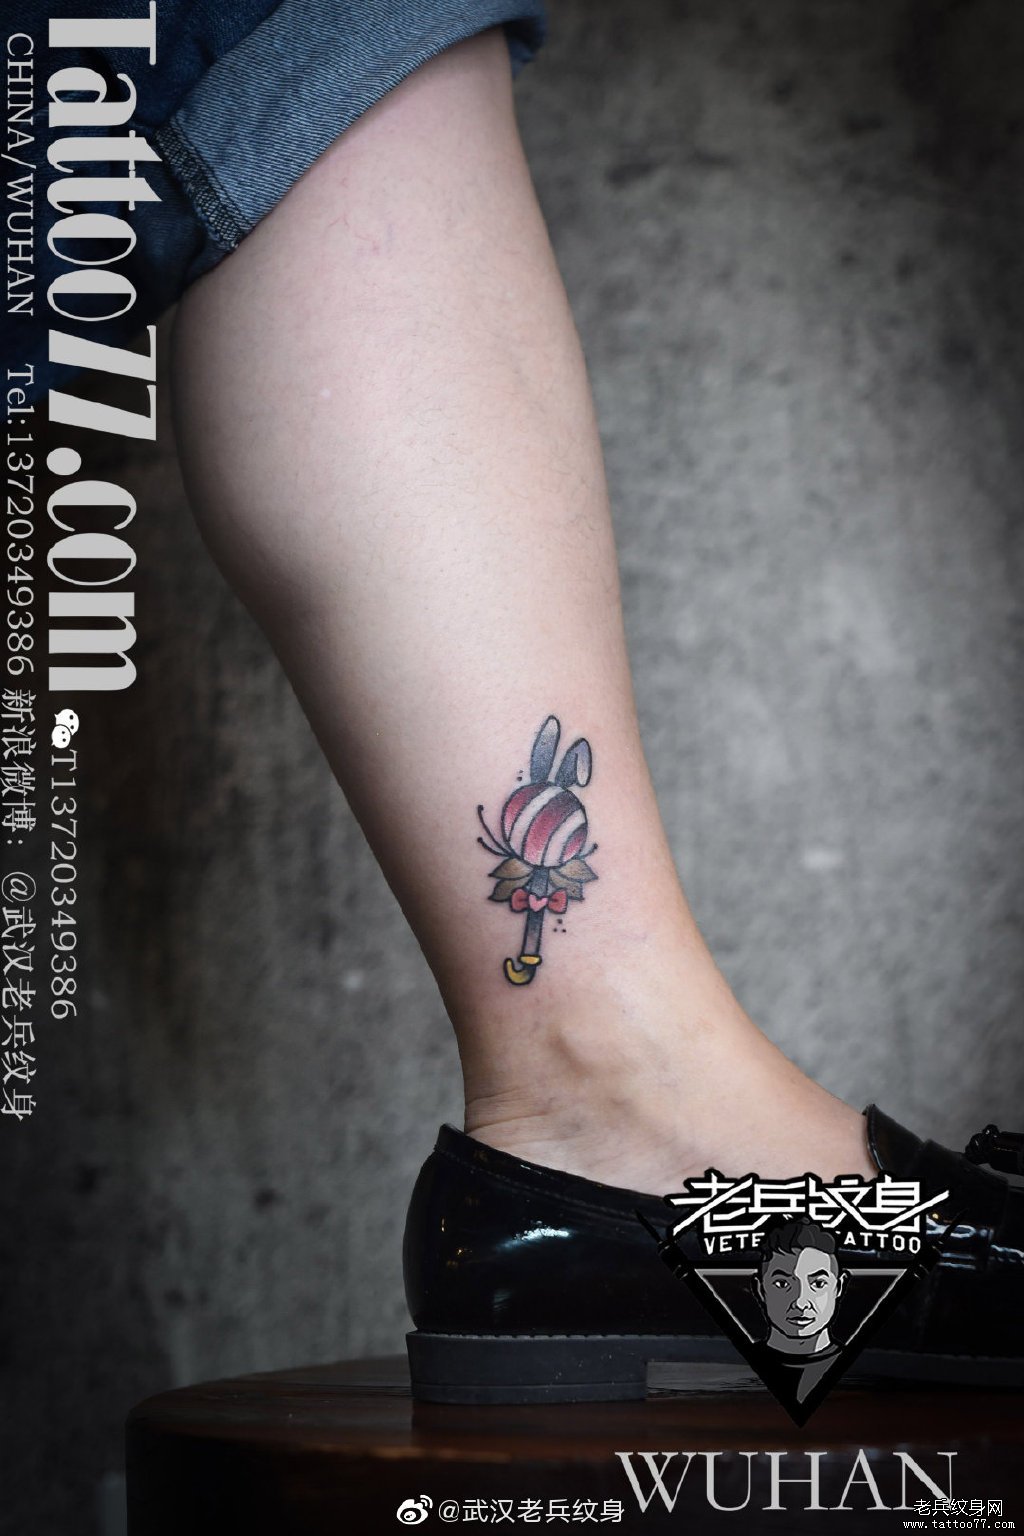 叶小姐脚踝处的彩色蜡笔小新纹身图案 - 广州纹彩刺青